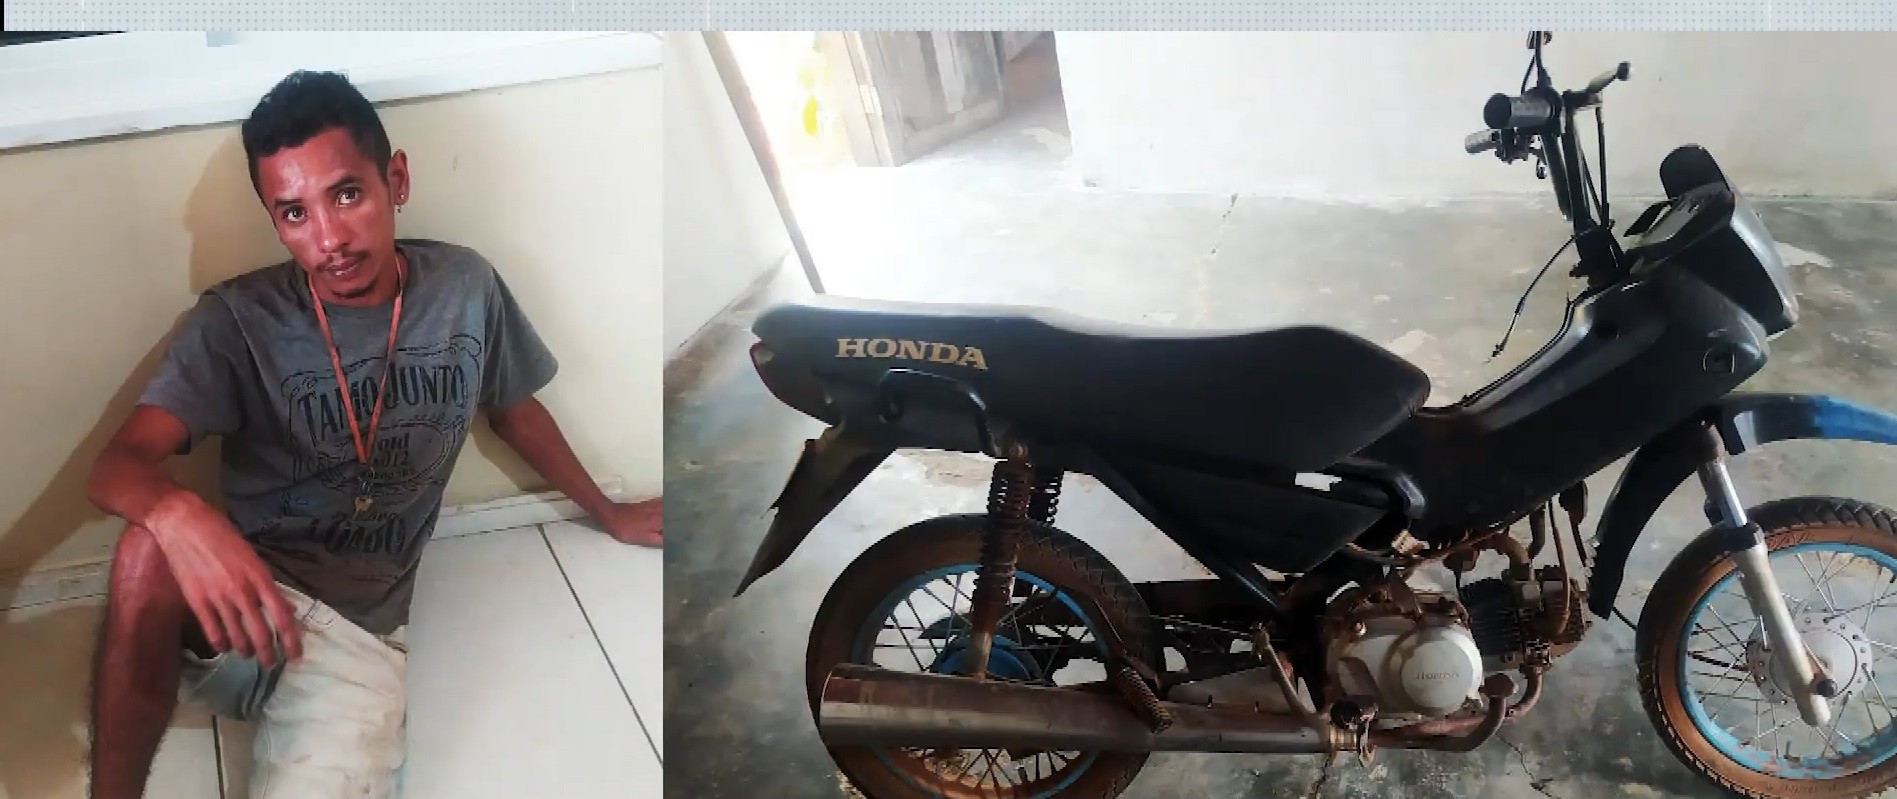 
Homem tenta vender motocicleta roubada por R$ 100 e é preso no MA